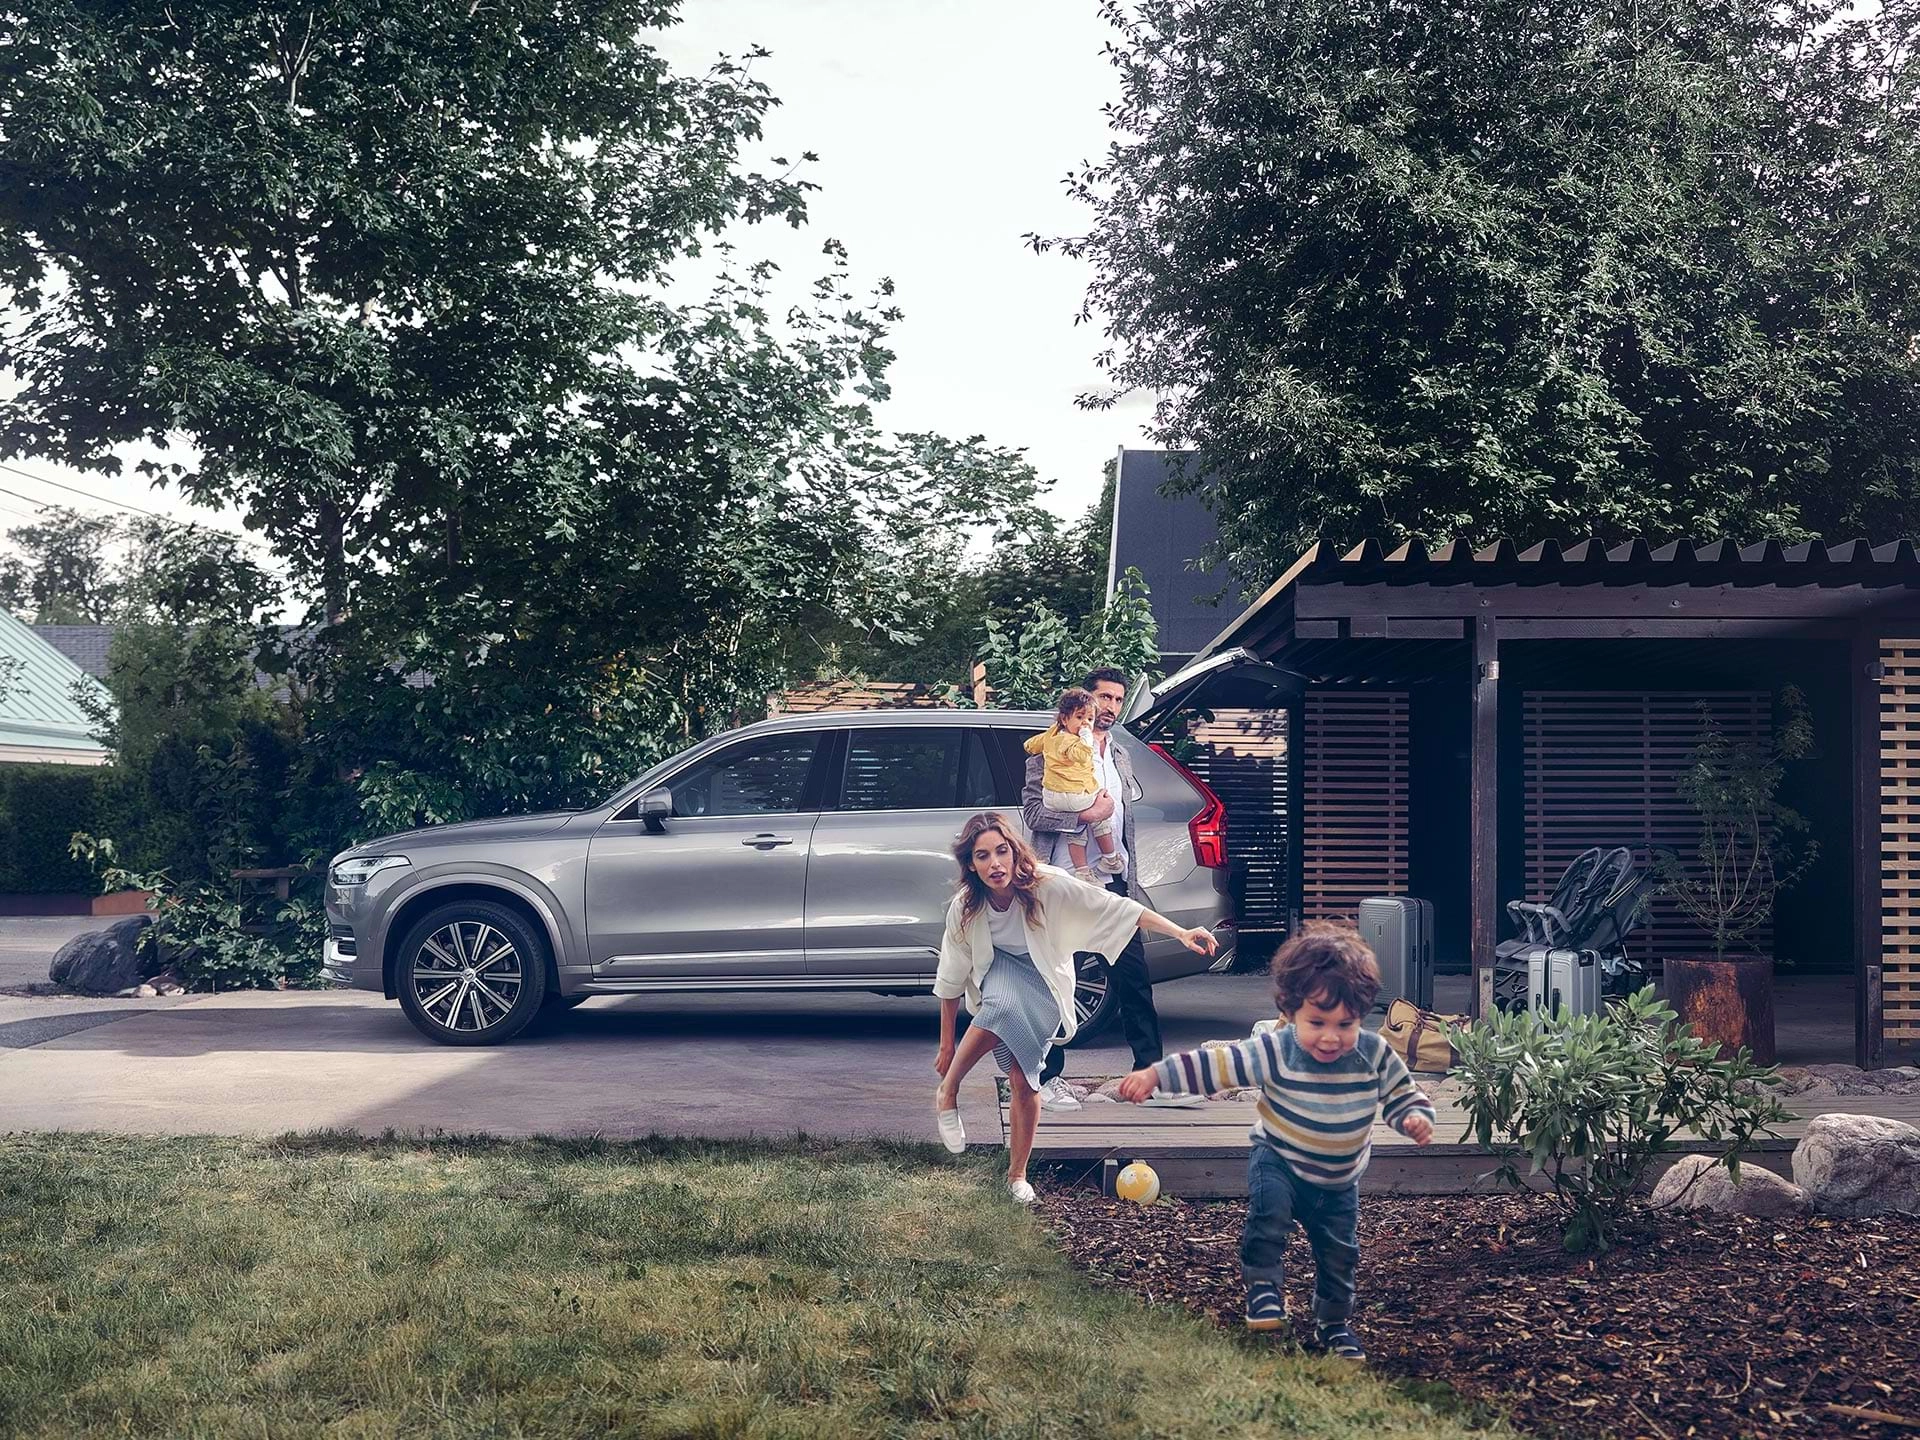 ขณะที่ครอบครัวในแถบชานเมืองกำลังเตรียมเดินทางด้วย Volvo SUV เด็กคนหนึ่งวิ่งข้ามสนามโดยมีแม่ของเขาวิ่งไล่ตาม